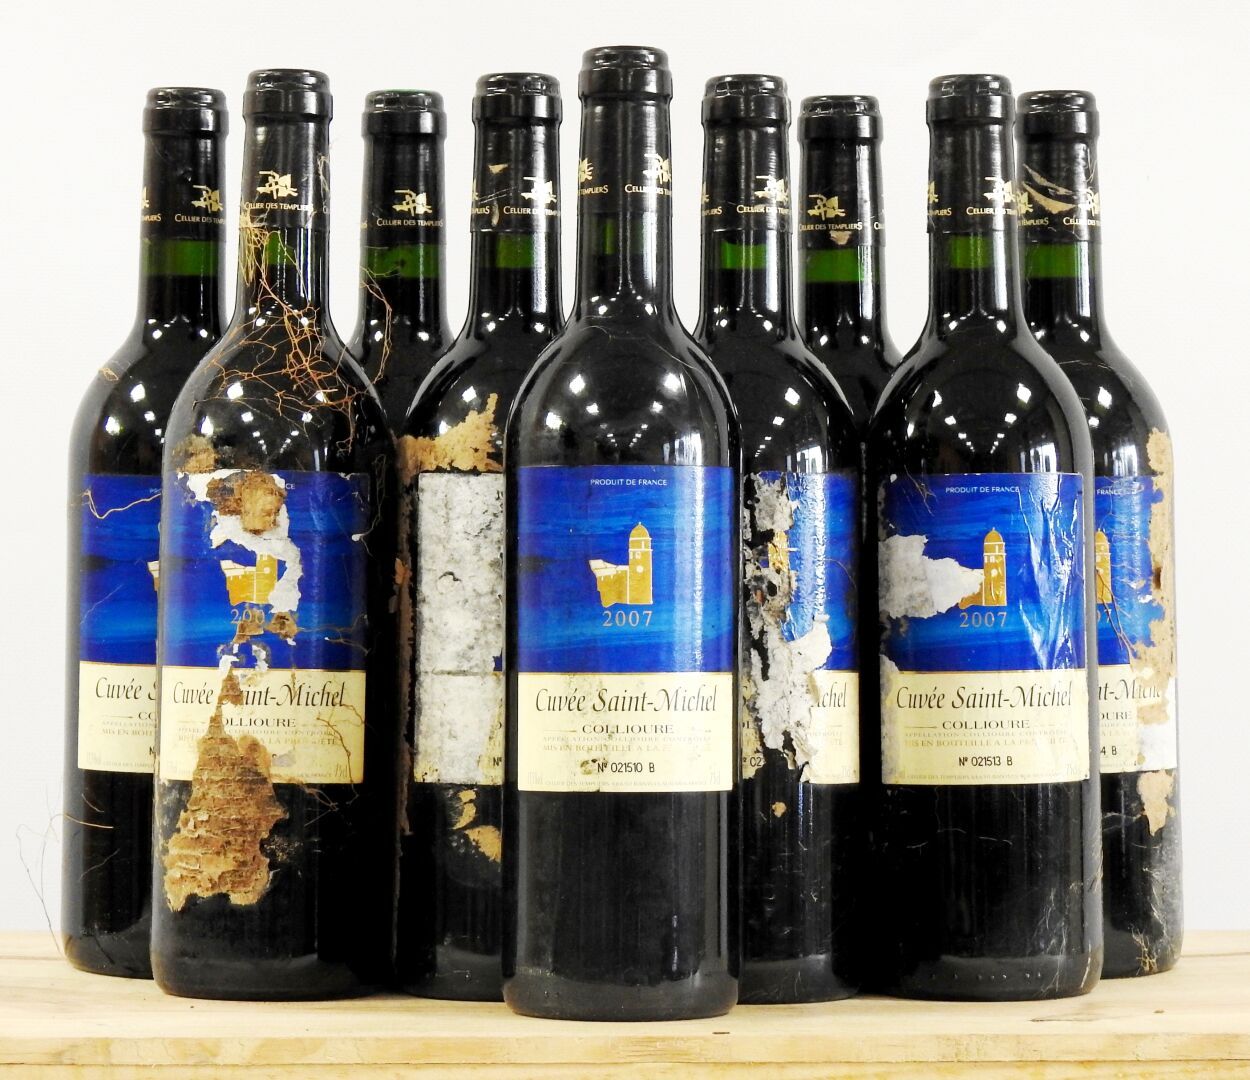 Null 10 bottles

Cuvée Saint Michel - Collioure - Cellier des Templiers - 2007

&hellip;